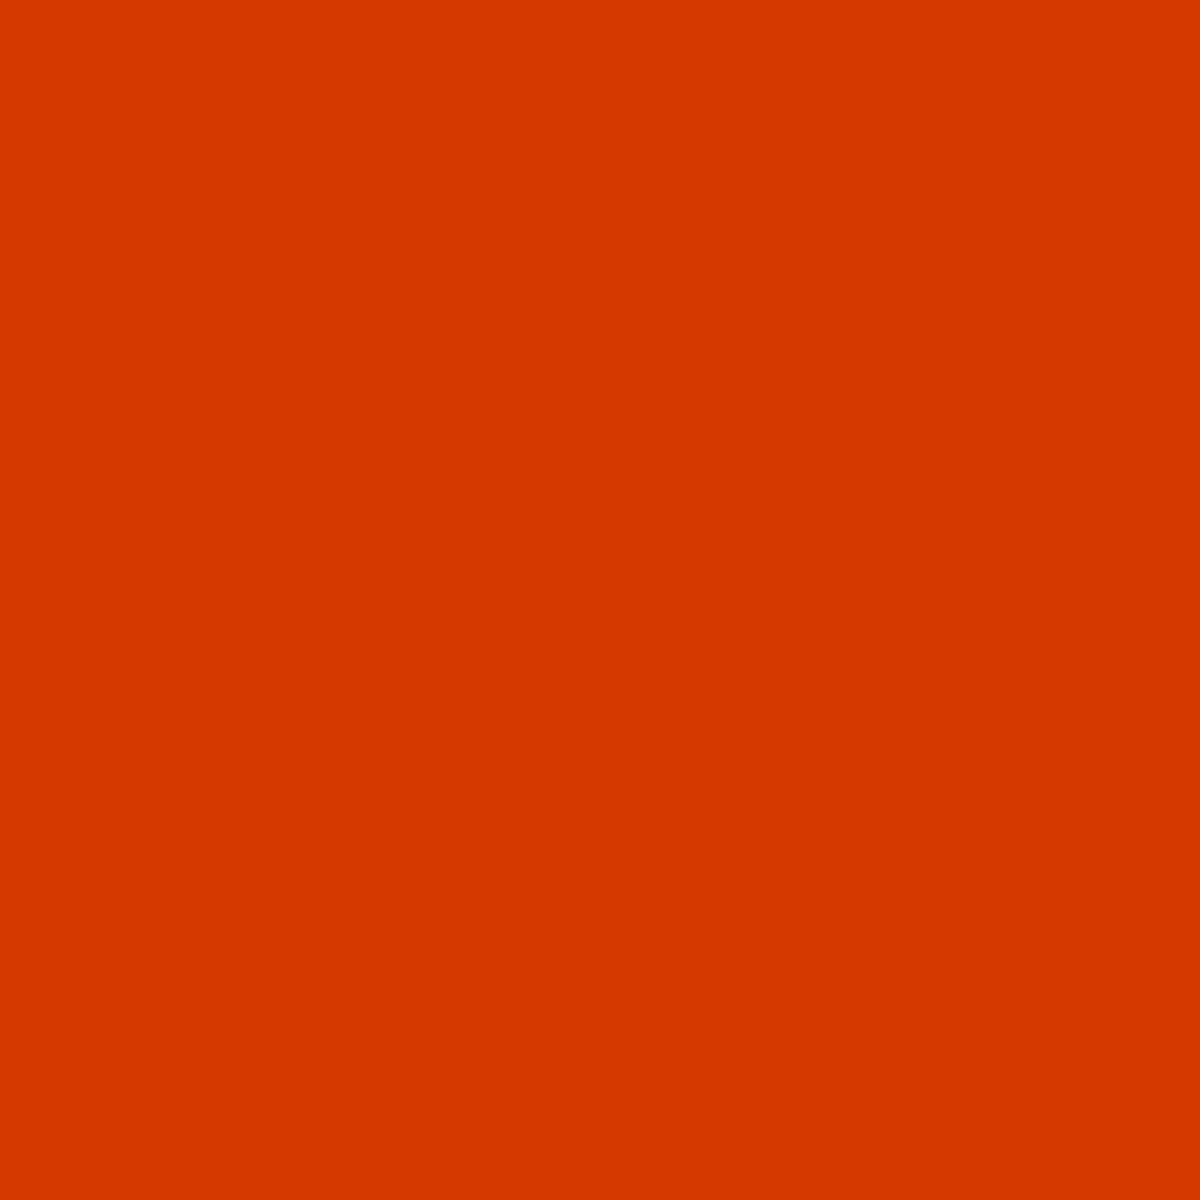 Crenshaw Blood Orange